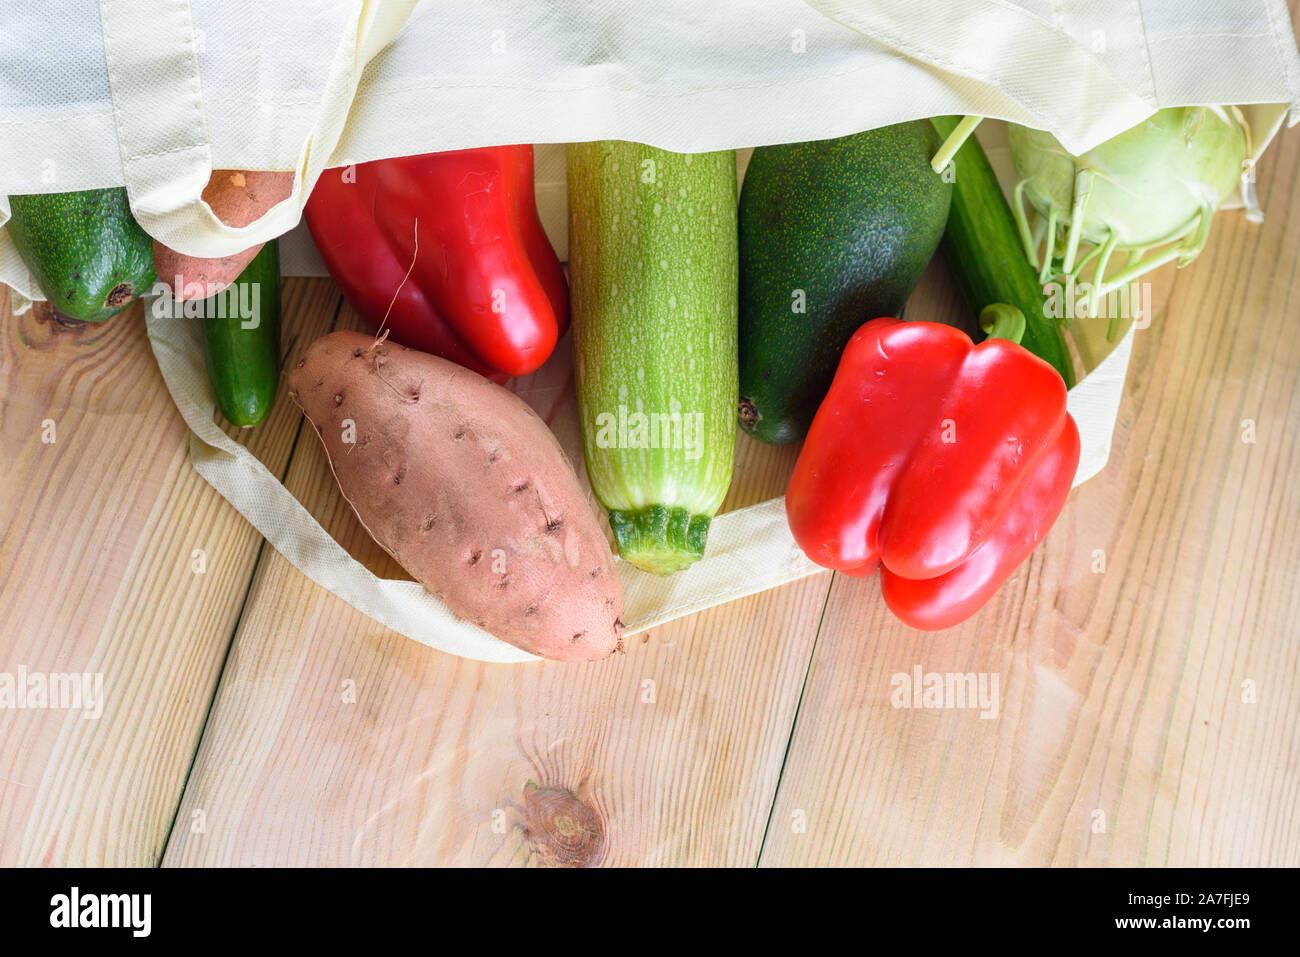 Welt frei von Kunststoff. Wiederverwendbare umweltfreundliche Leinwand einkaufen Tasche mit Gemüse - süsse Kartoffeln, Zucchini, Paprika, Tomaten, Gurke und Avocado auf hölzernen Schreibtisch. Organische Produkte. Weniger Kunststoff. Stockfoto